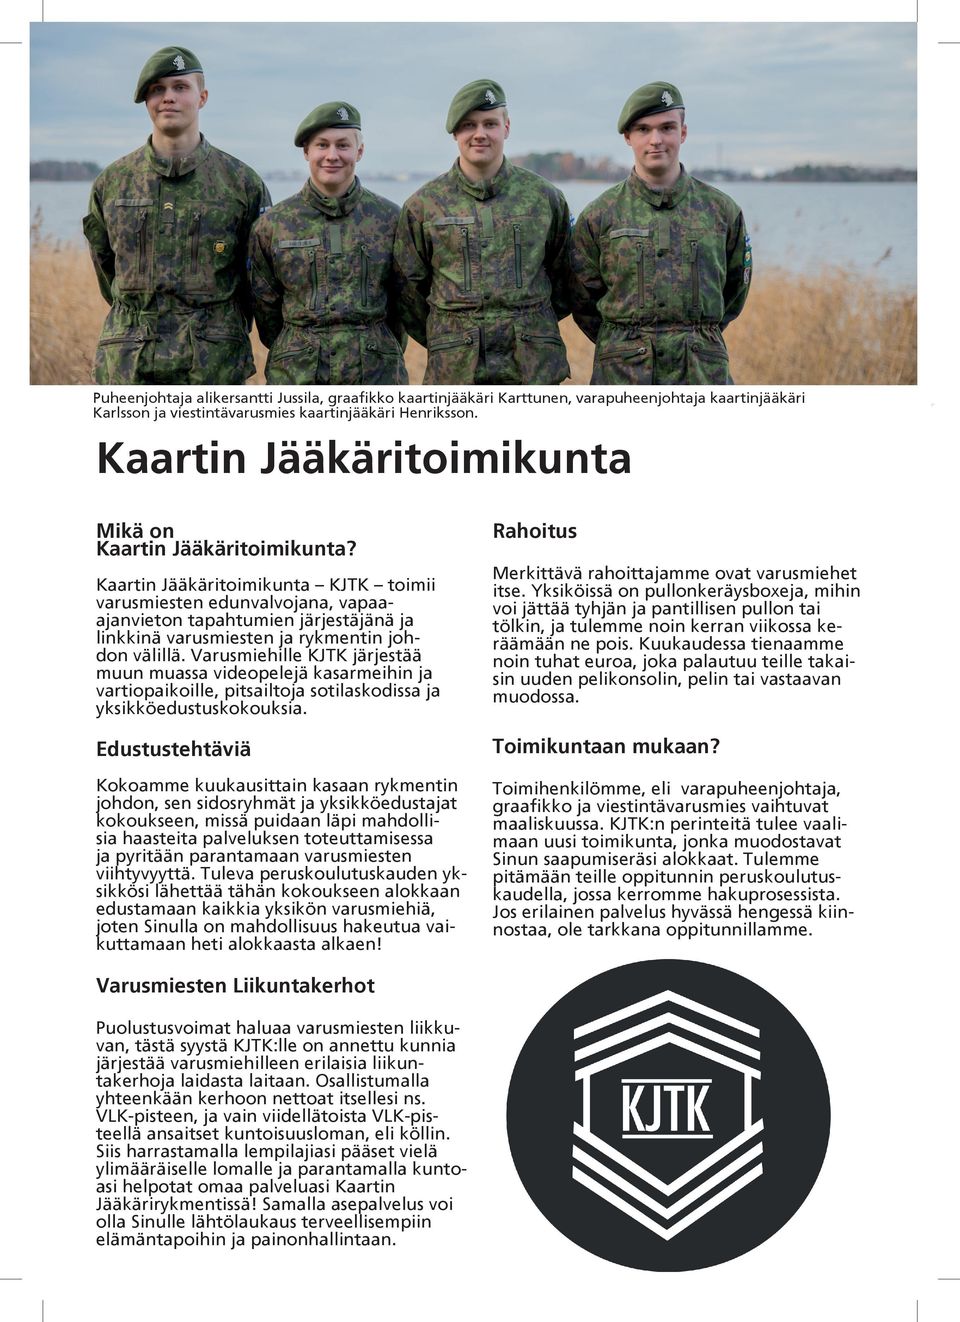 Kaartin Jääkäritoimikunta KJTK toimii varusmiesten edunvalvojana, vapaaajanvieton tapahtumien järjestäjänä ja linkkinä varusmiesten ja rykmentin johdon välillä.